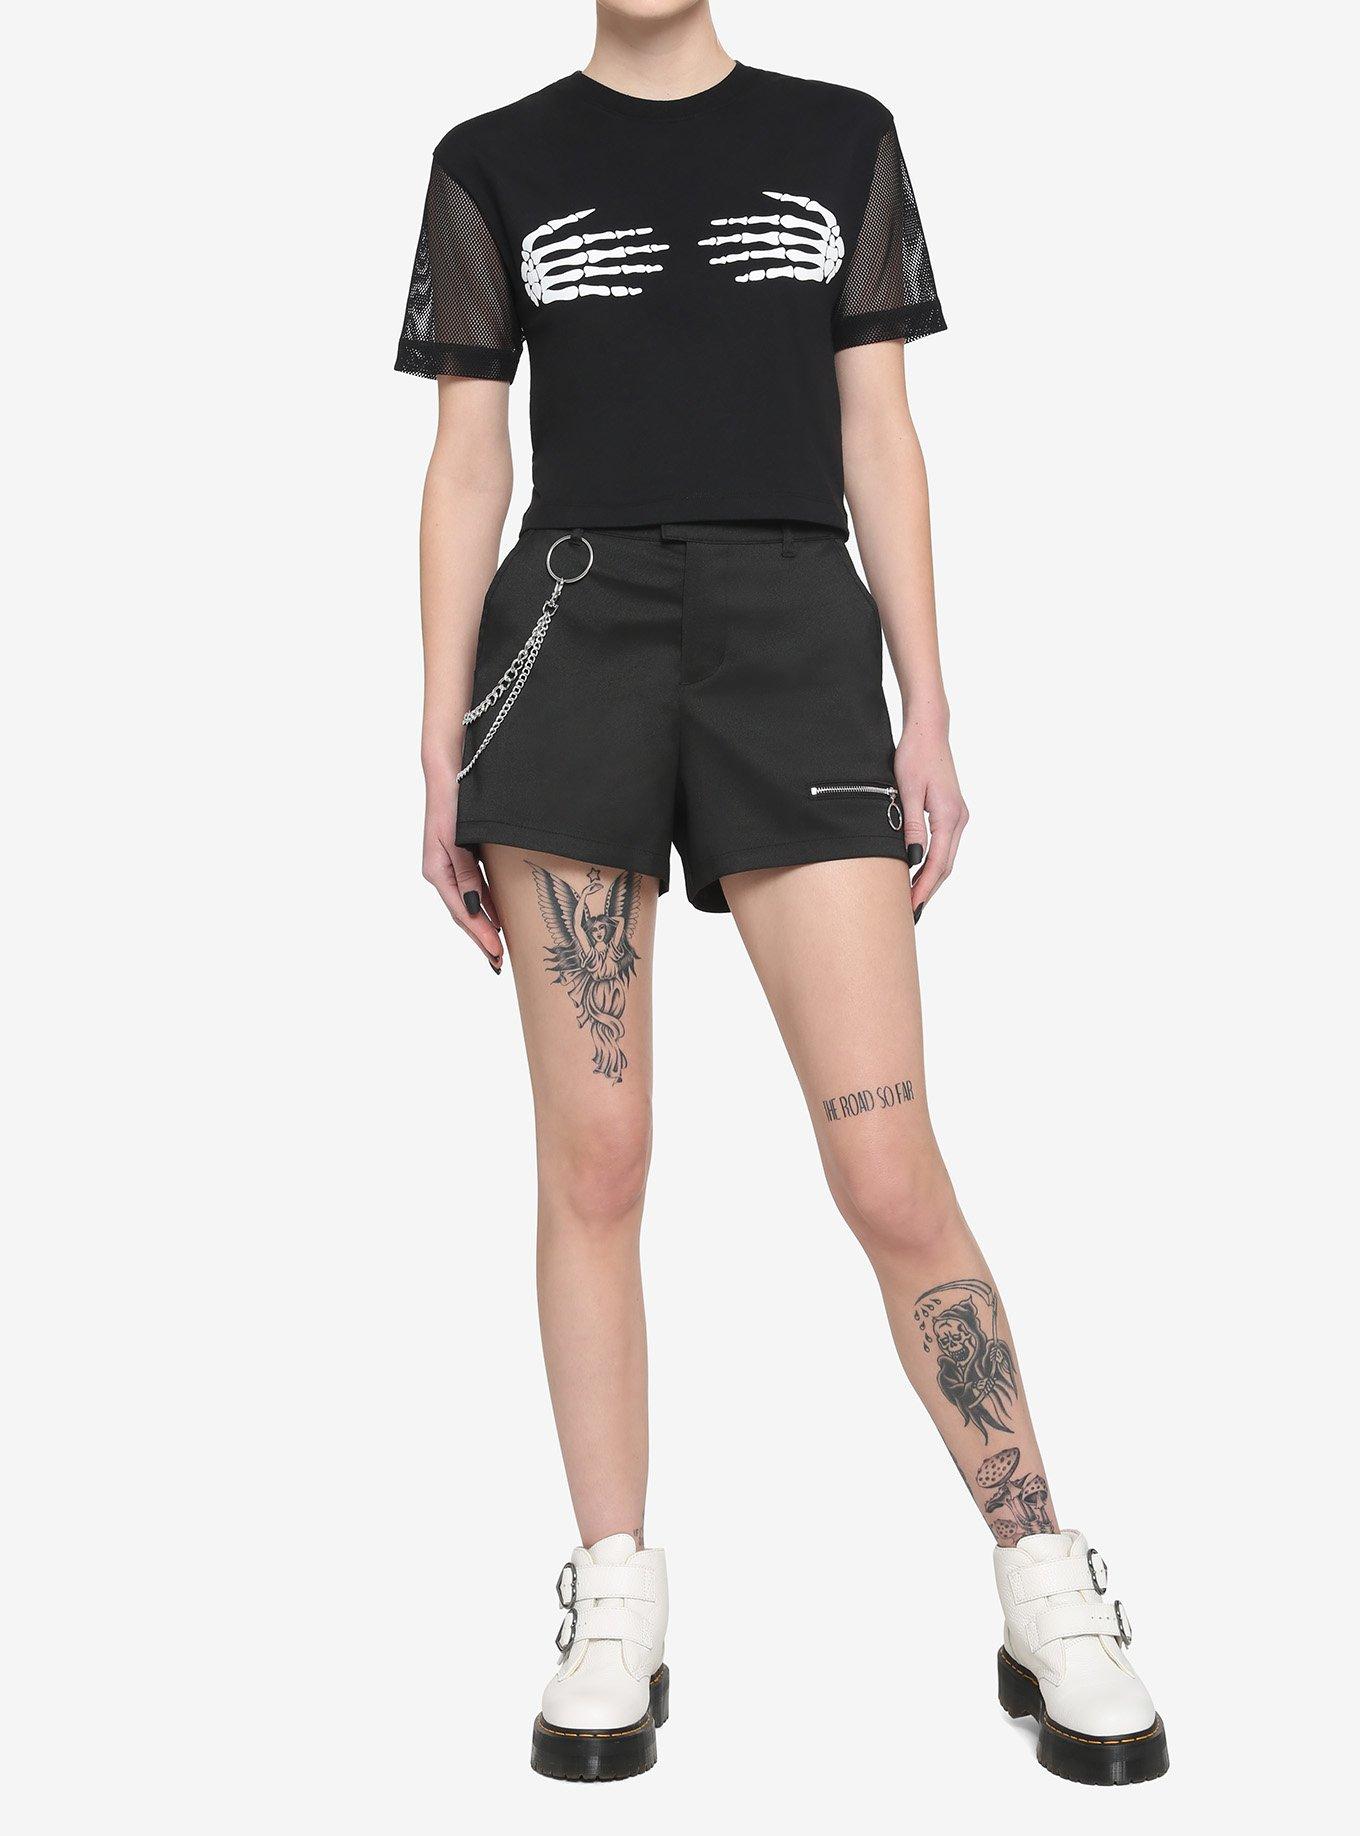 Skeleton Hands Mesh Girls T-Shirt, BLACK, alternate